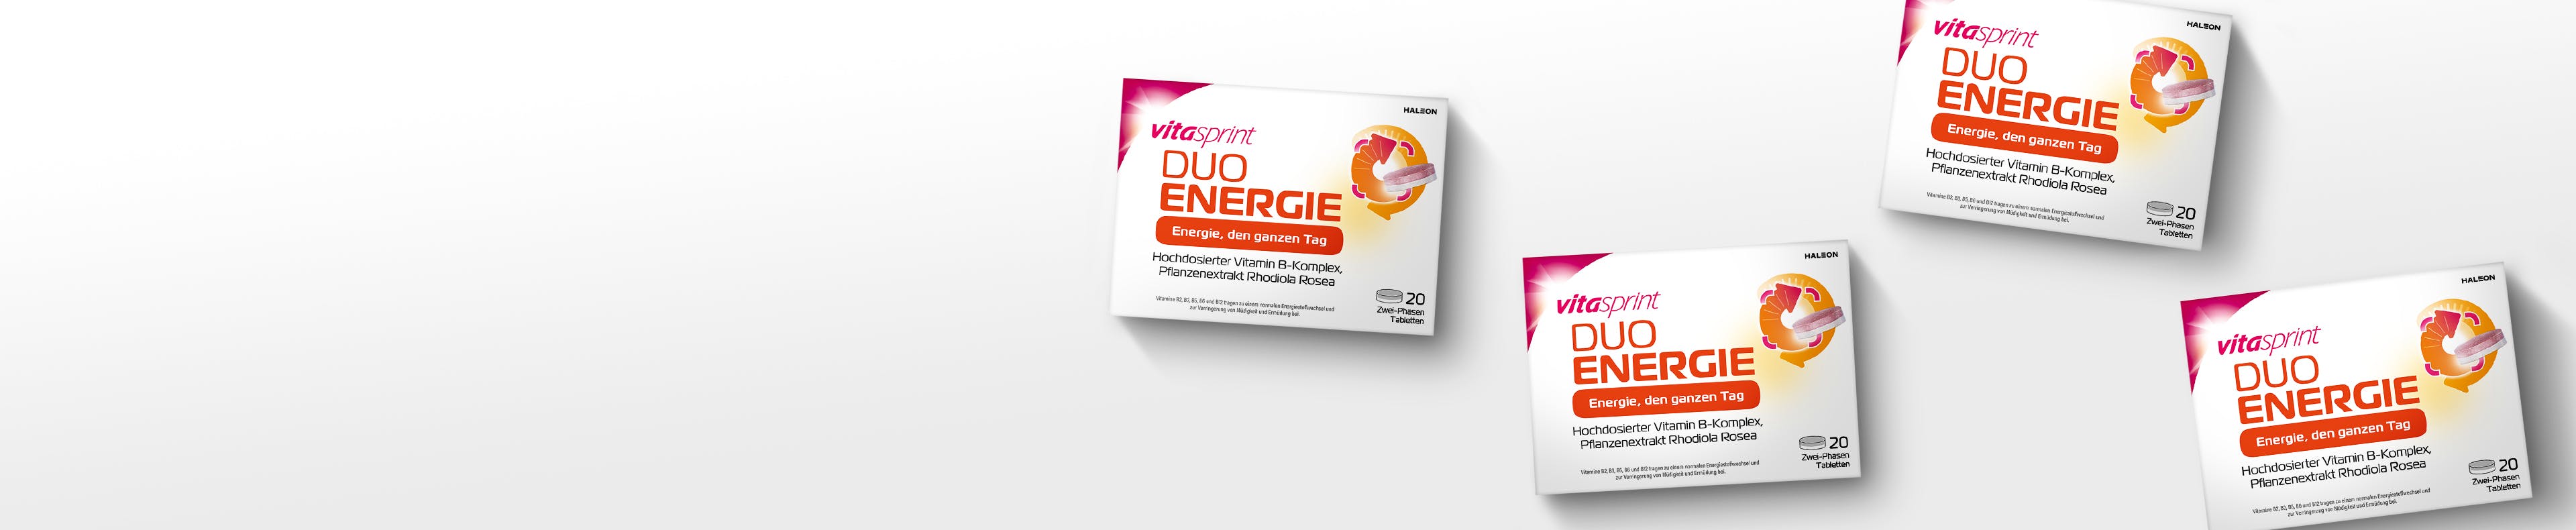 Vitasprint Duo Energie Packungen auf weißem Hintergrund 